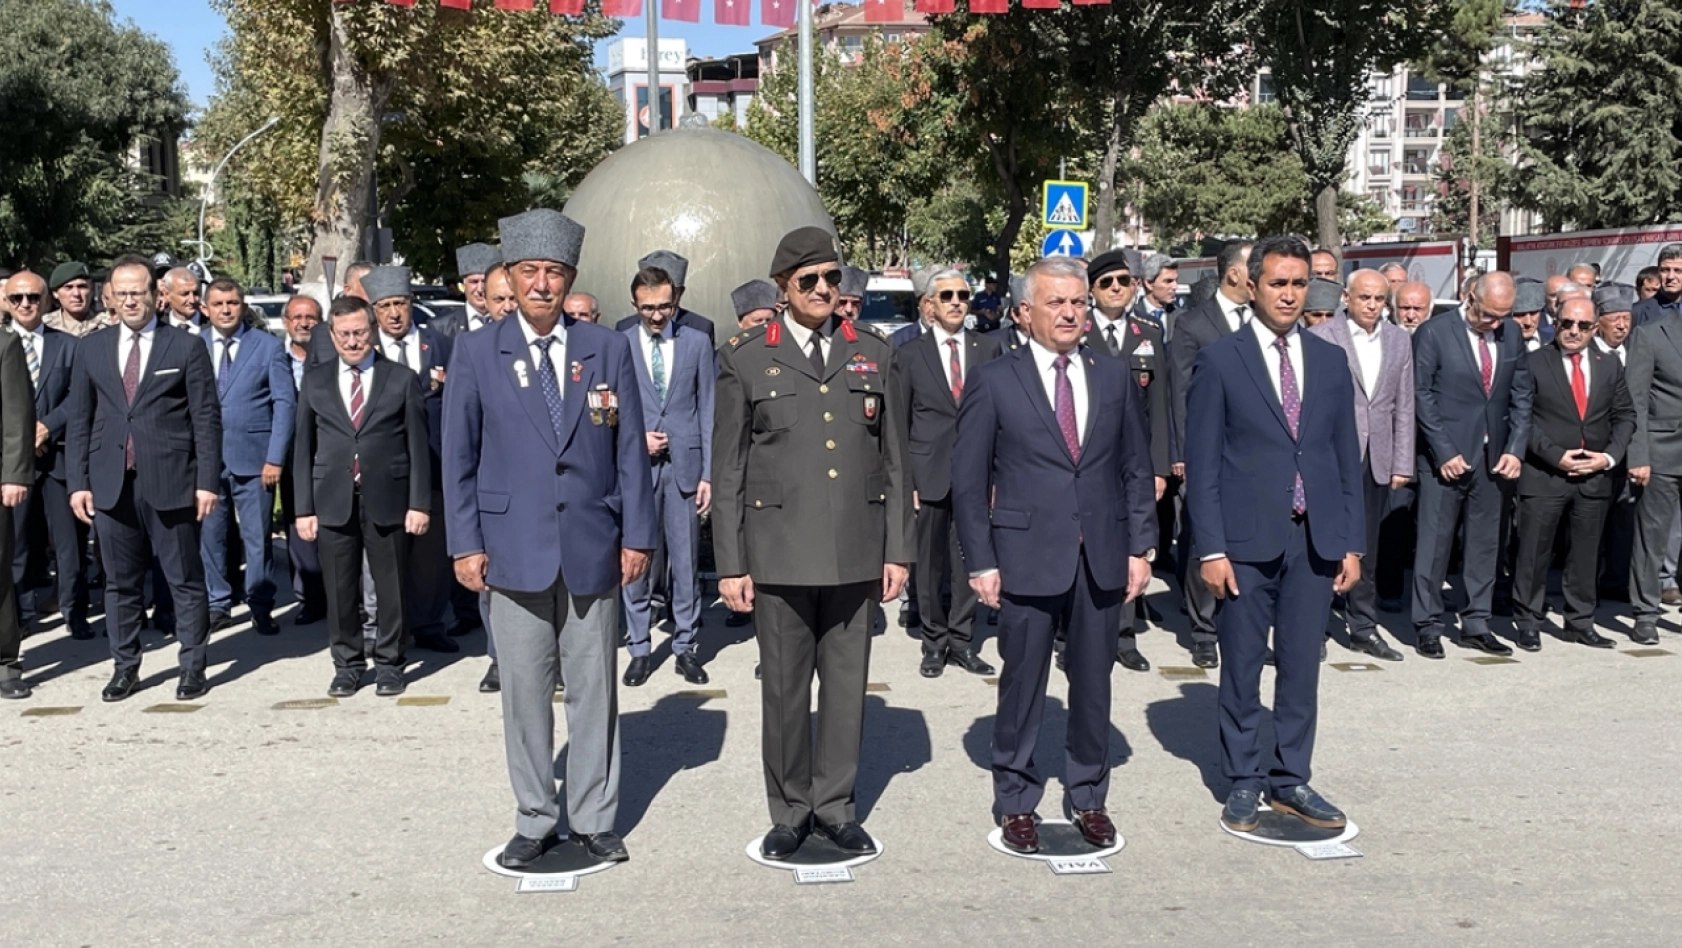 Malatya'da 19 Eylül Gaziler Günü dolayısıyla tören düzenlendi.